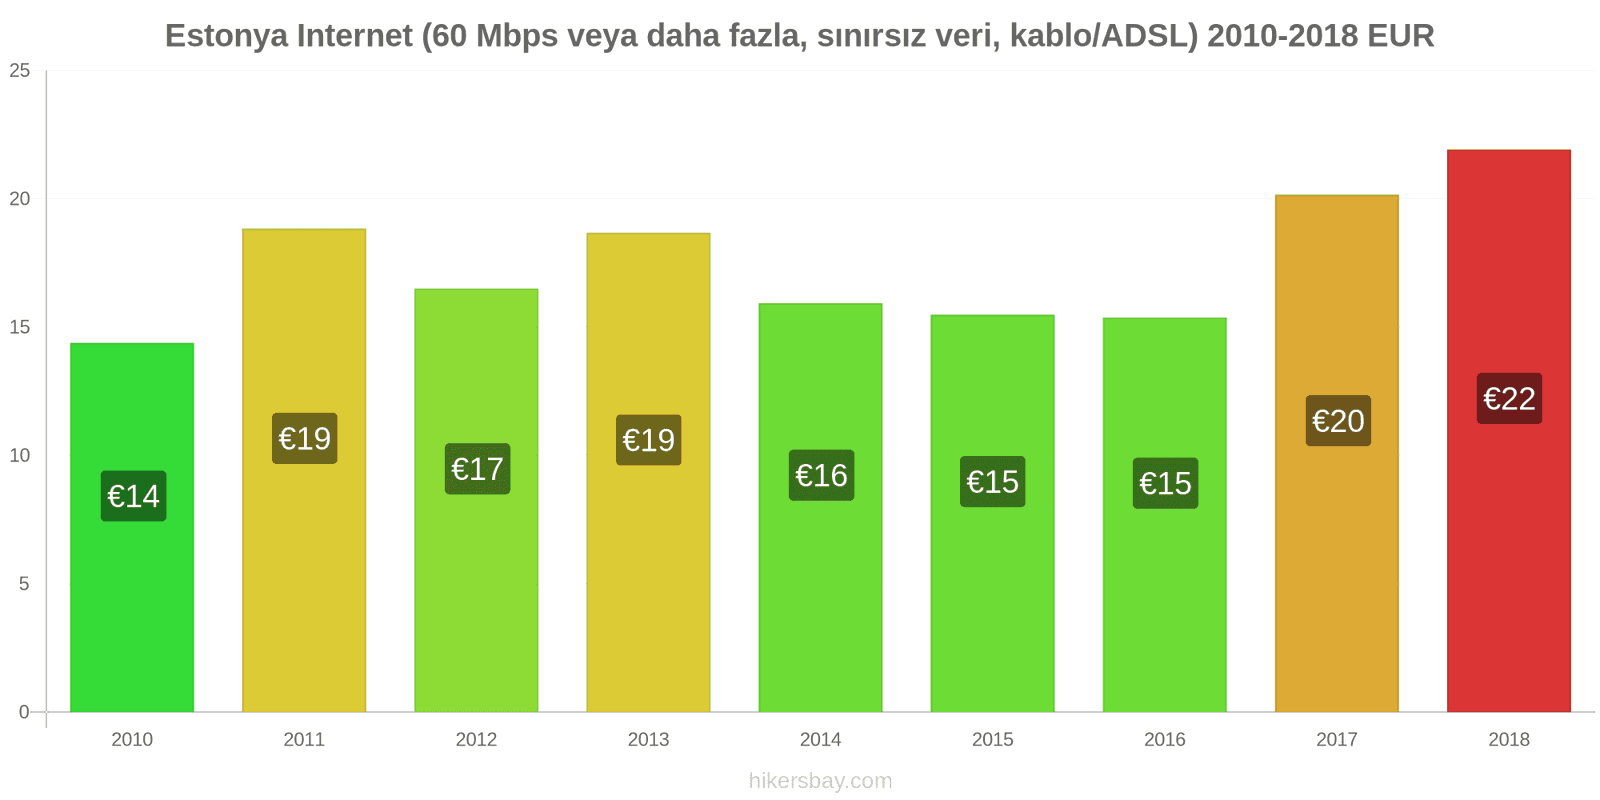 Estonya fiyat değişiklikleri İnternet (60 Mbps veya daha fazla, sınırsız veri, kablo/ADSL) hikersbay.com